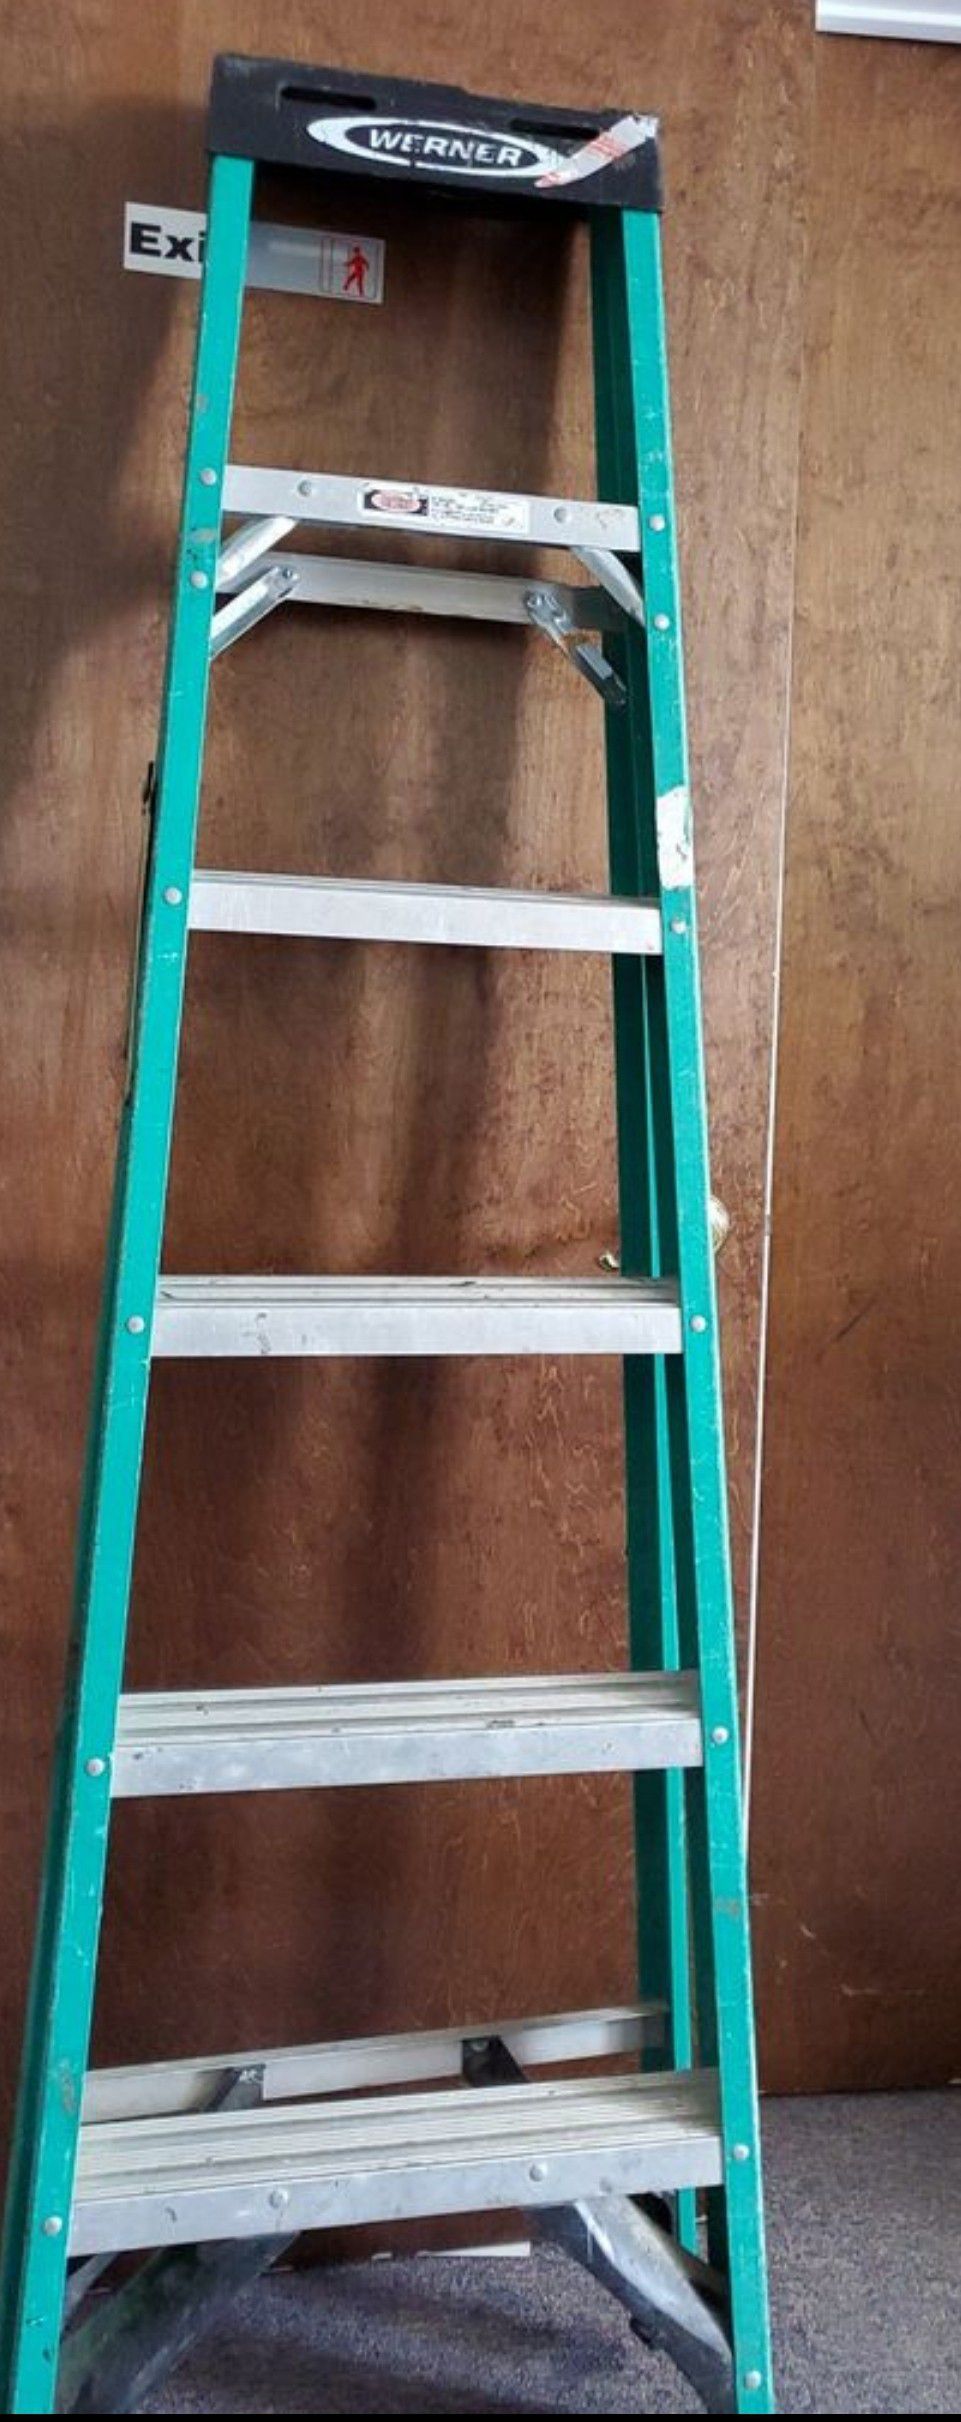 6' Werner Fiberglass Ladder $30 firm